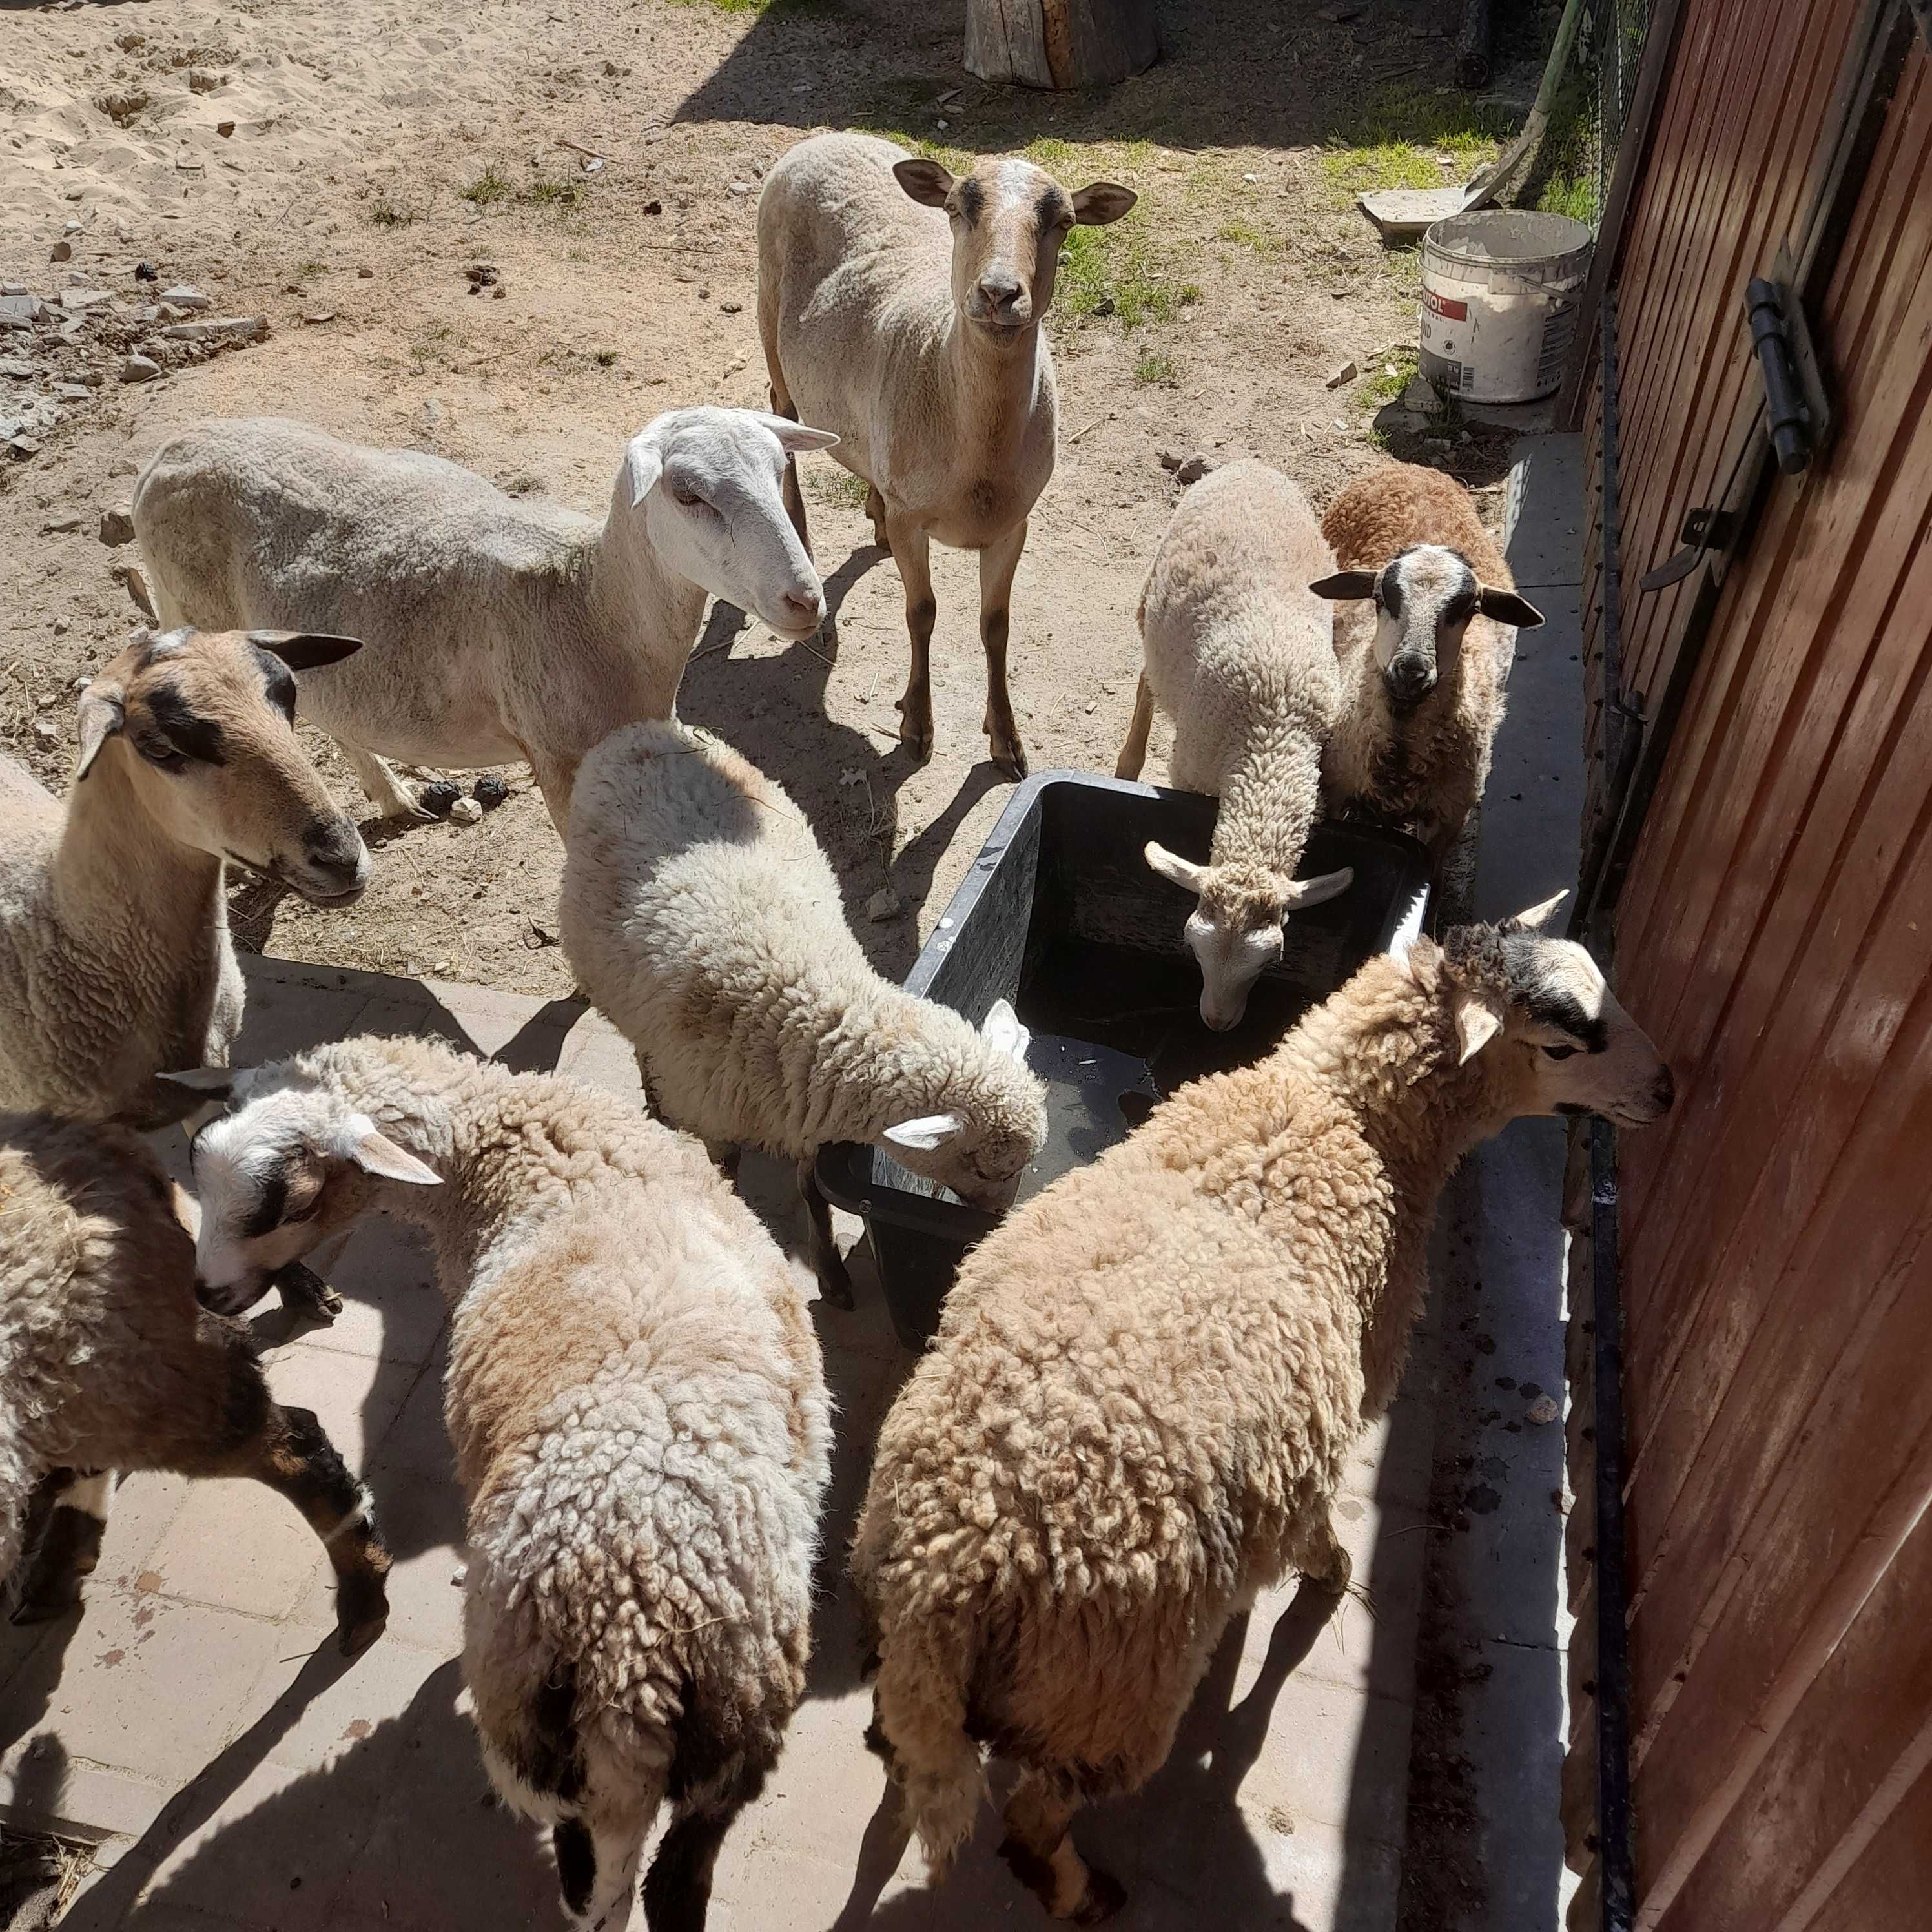 Barany owce baranki